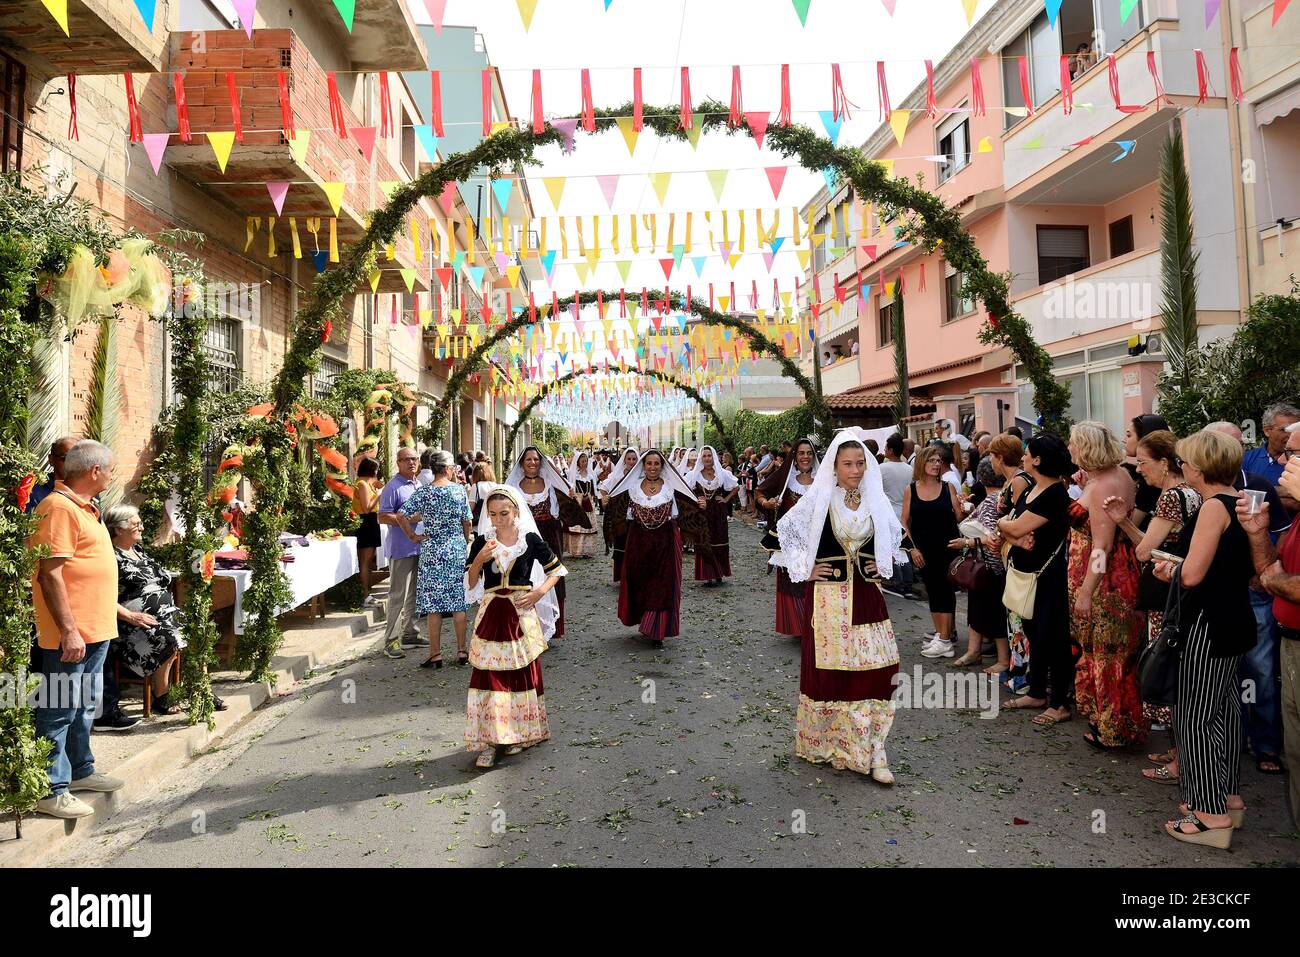 Italien, Sardinien, Selargius: Traditionelle Party anlässlich der 58. Ausgabe des Sposalizio Selargino, traditionelle Hochzeit, . Parade durch t Stockfoto